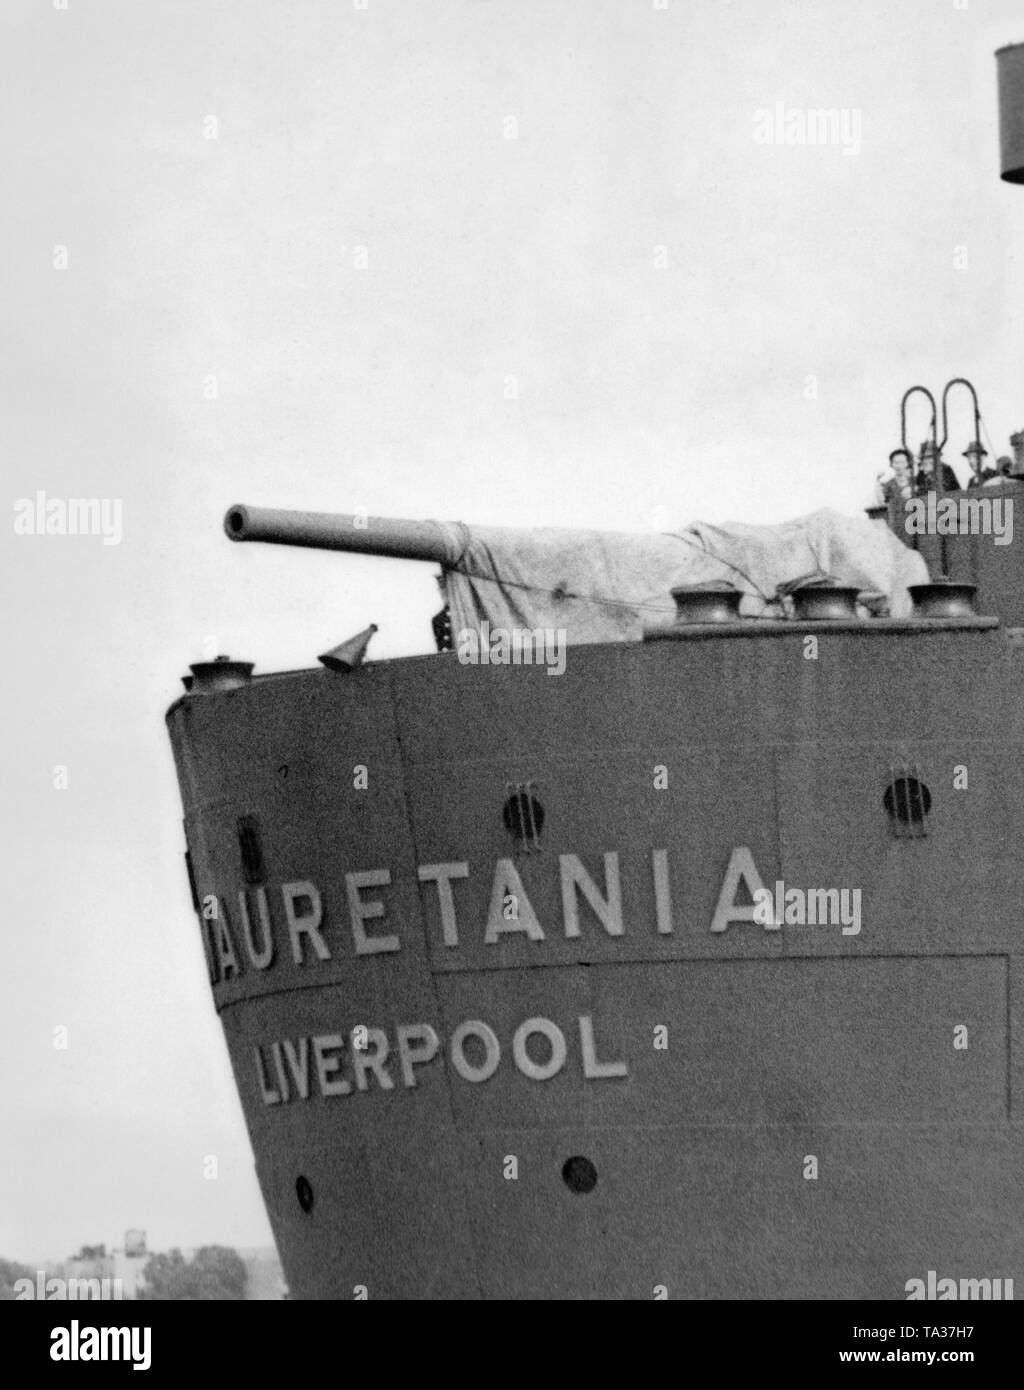 Une arme de défense sous-marin sur la poupe du paquebot britannique "auretania'. Le auretania «' servi en tant que pays fournisseur de transporteur pendant la Seconde Guerre mondiale. Banque D'Images